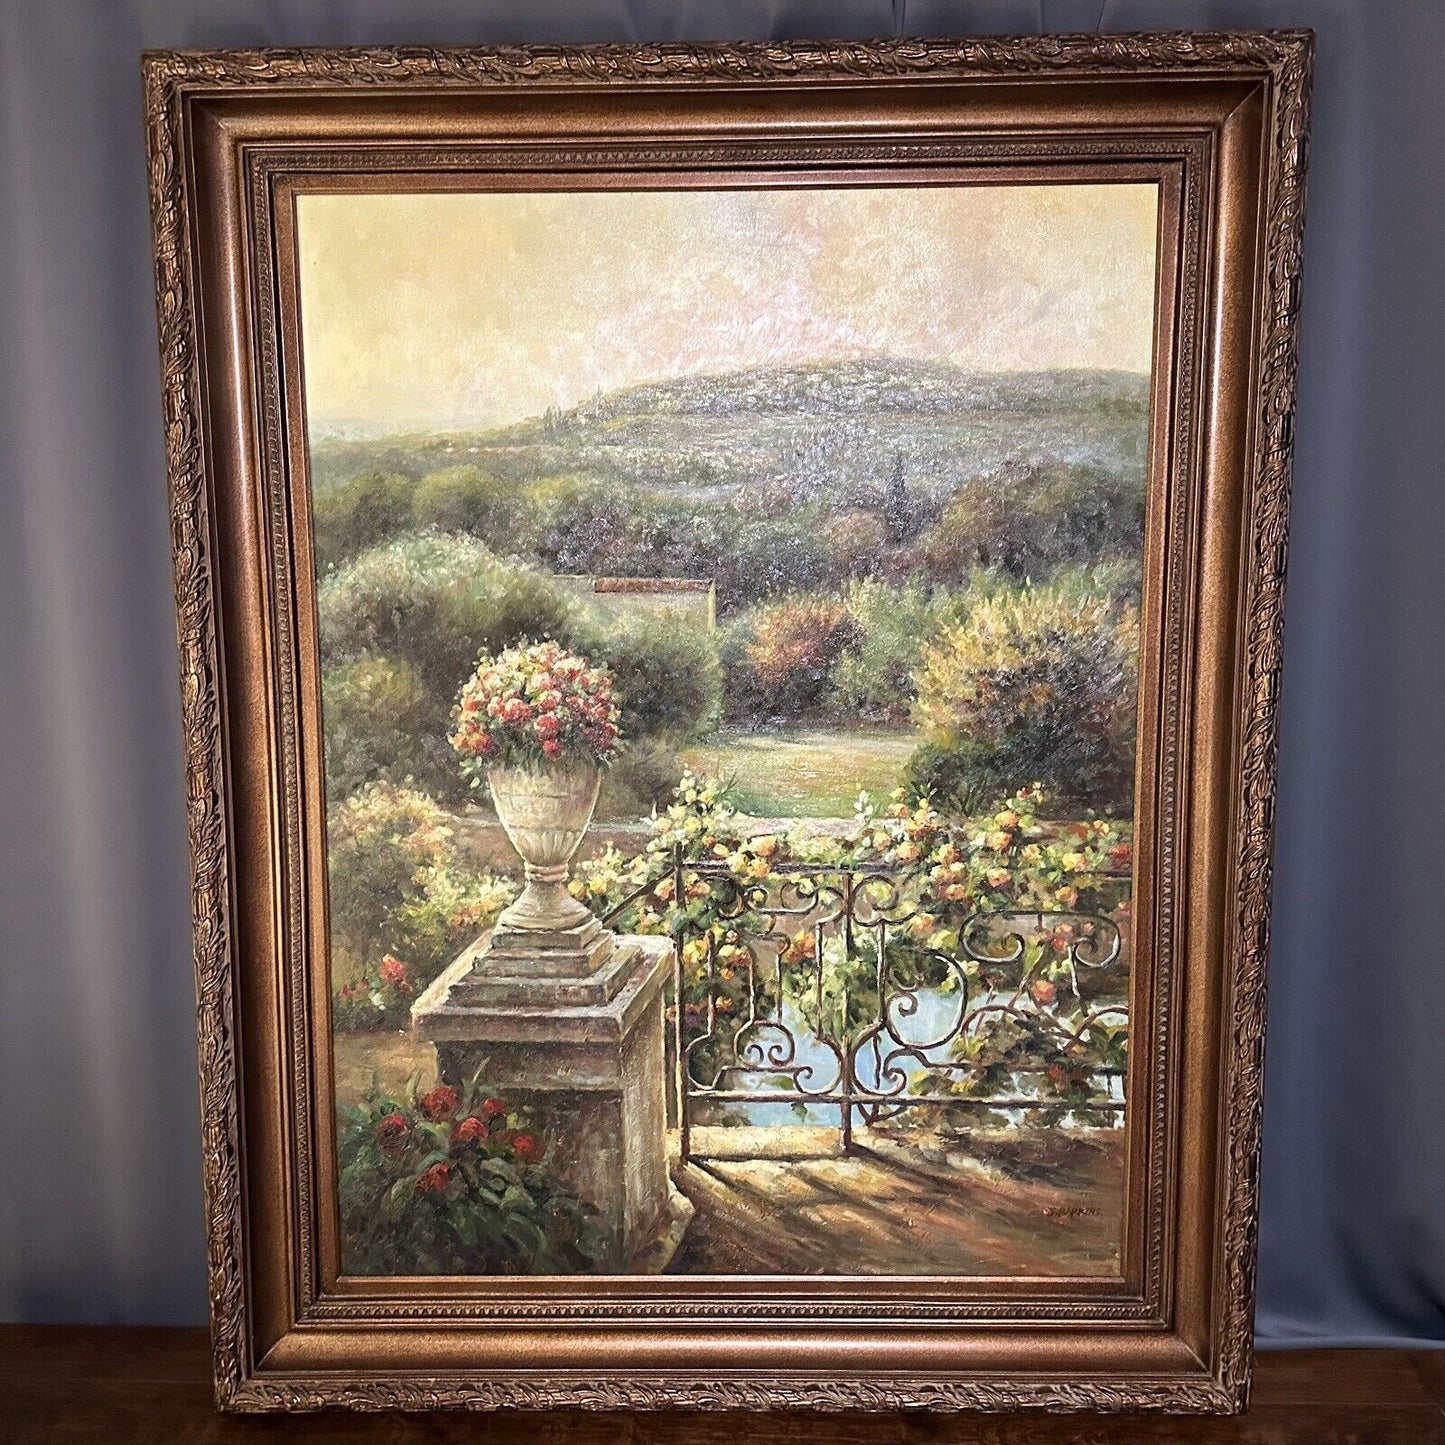 Original Oil Painting J. Barkins Mediterranean Landscape Signed Framed Large 4ft